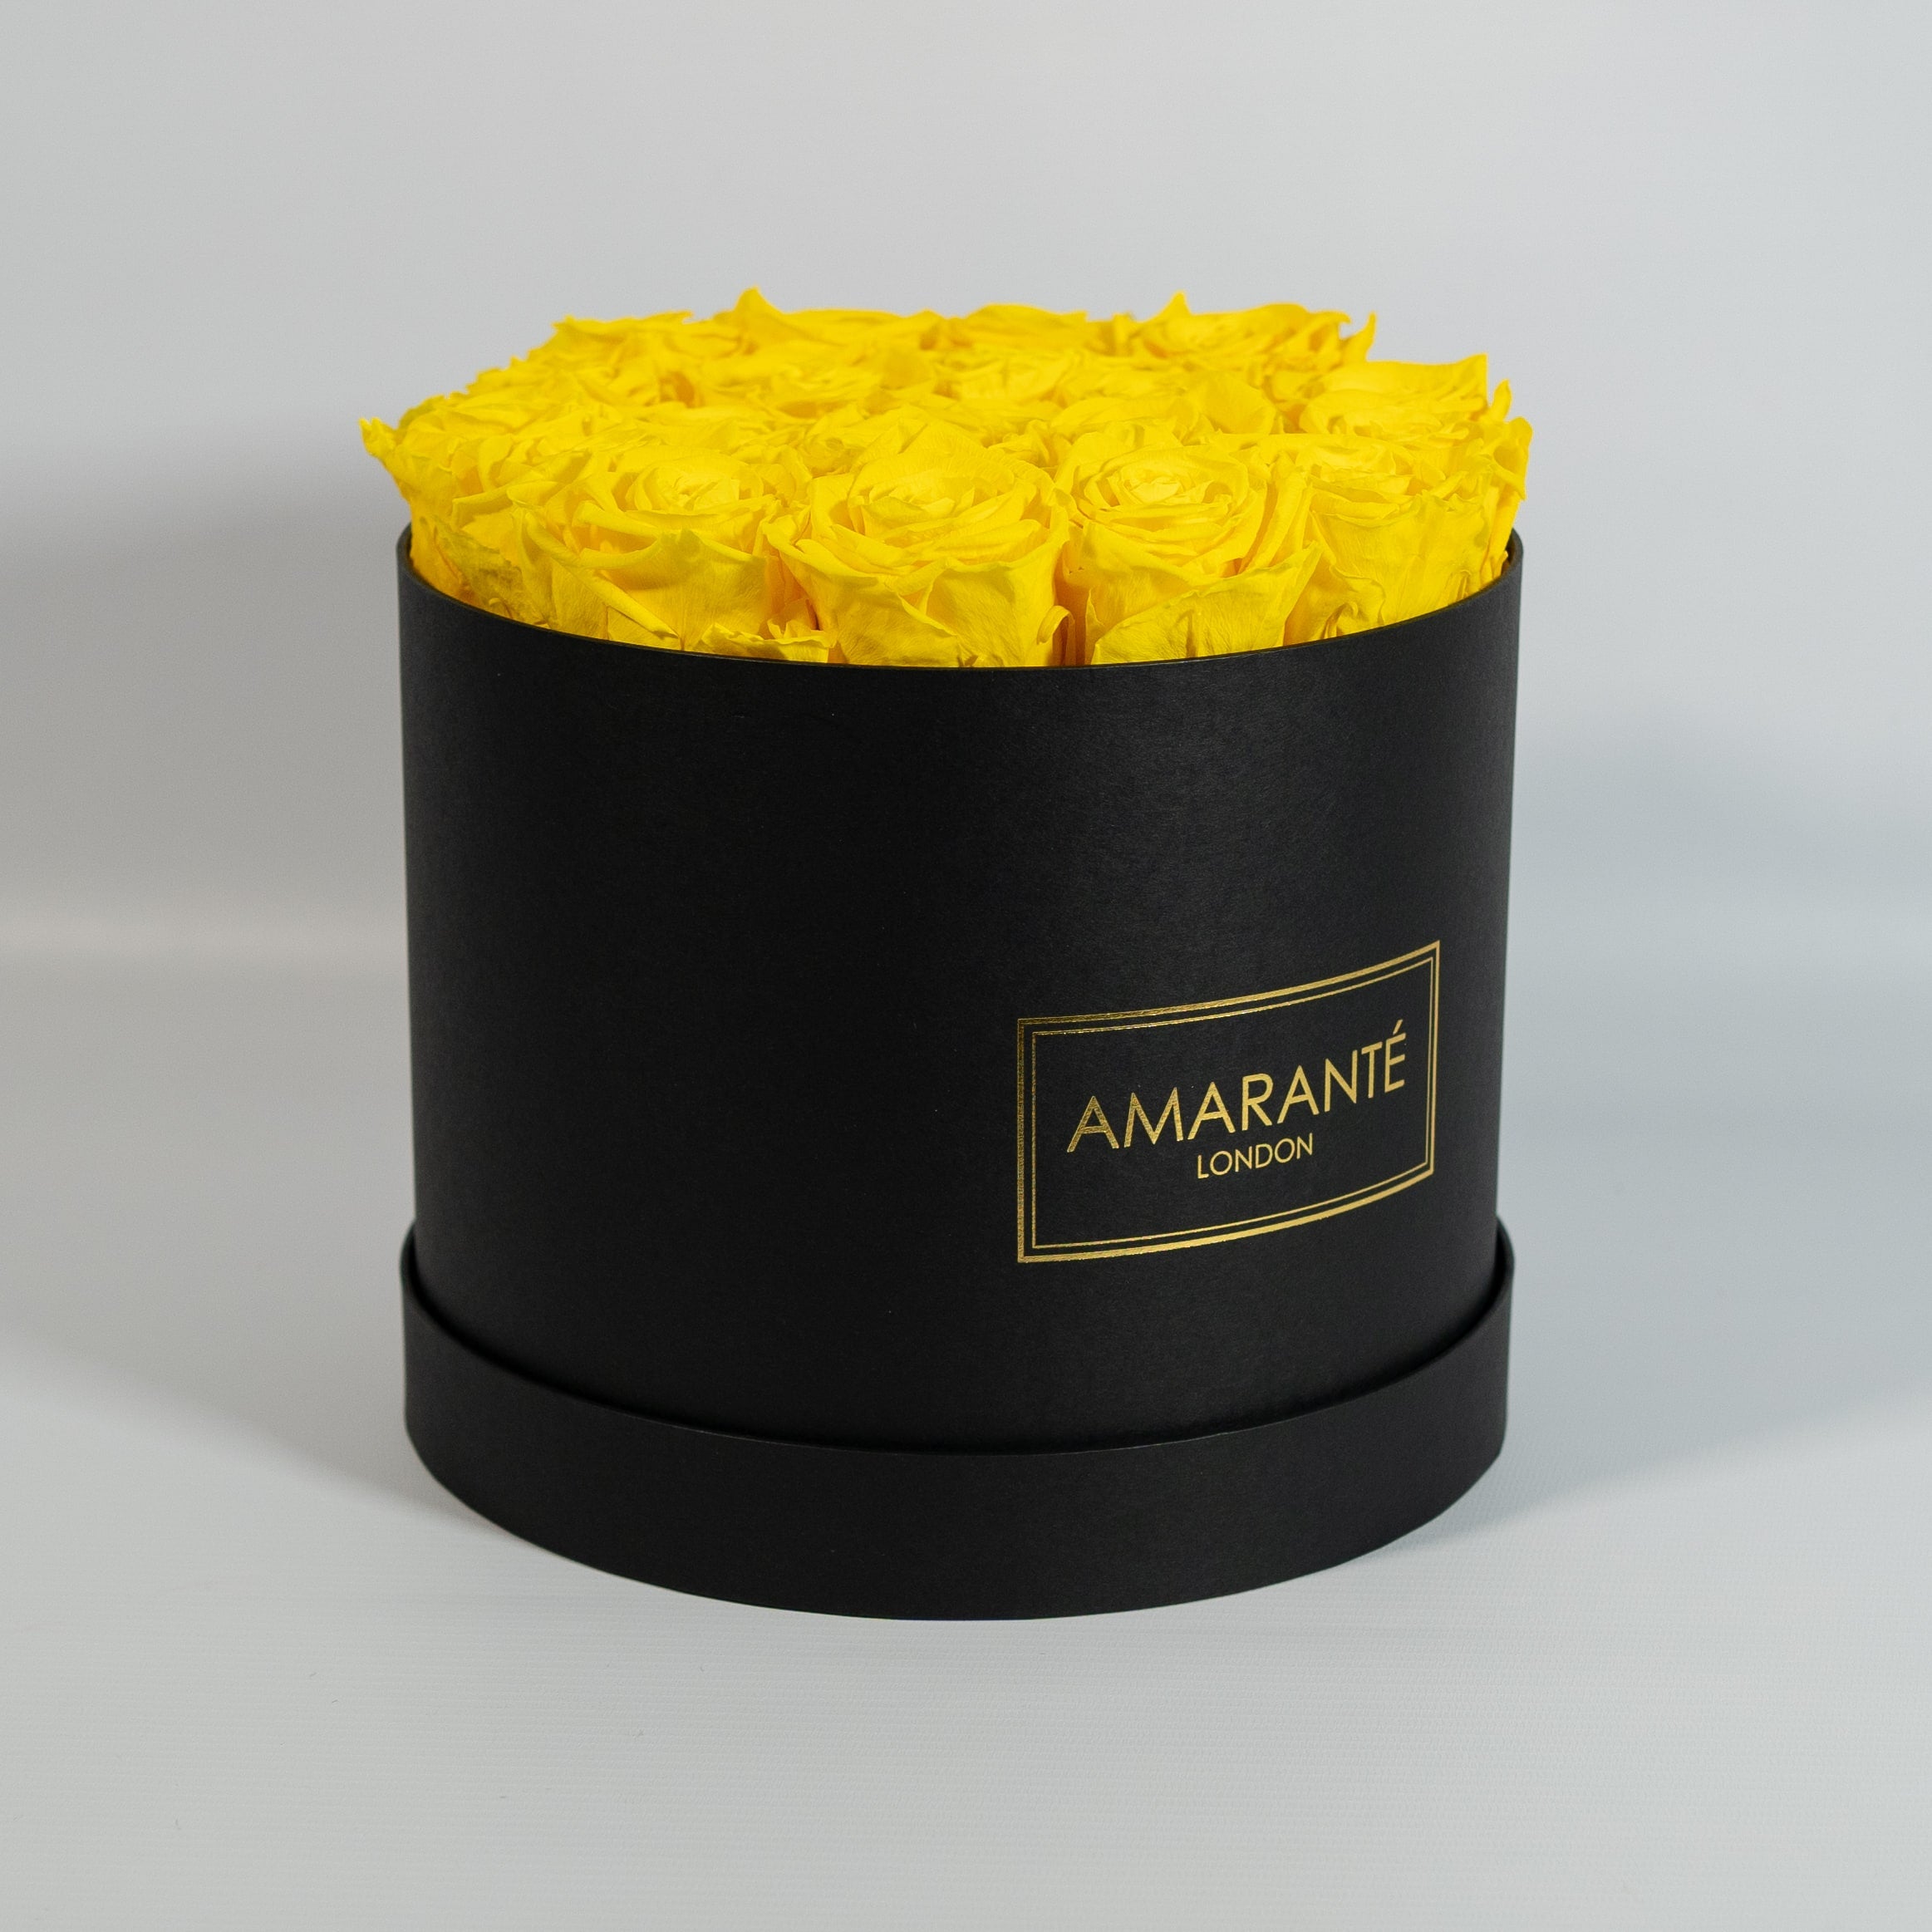 Delightful yellow Roses in an idyllic black box 